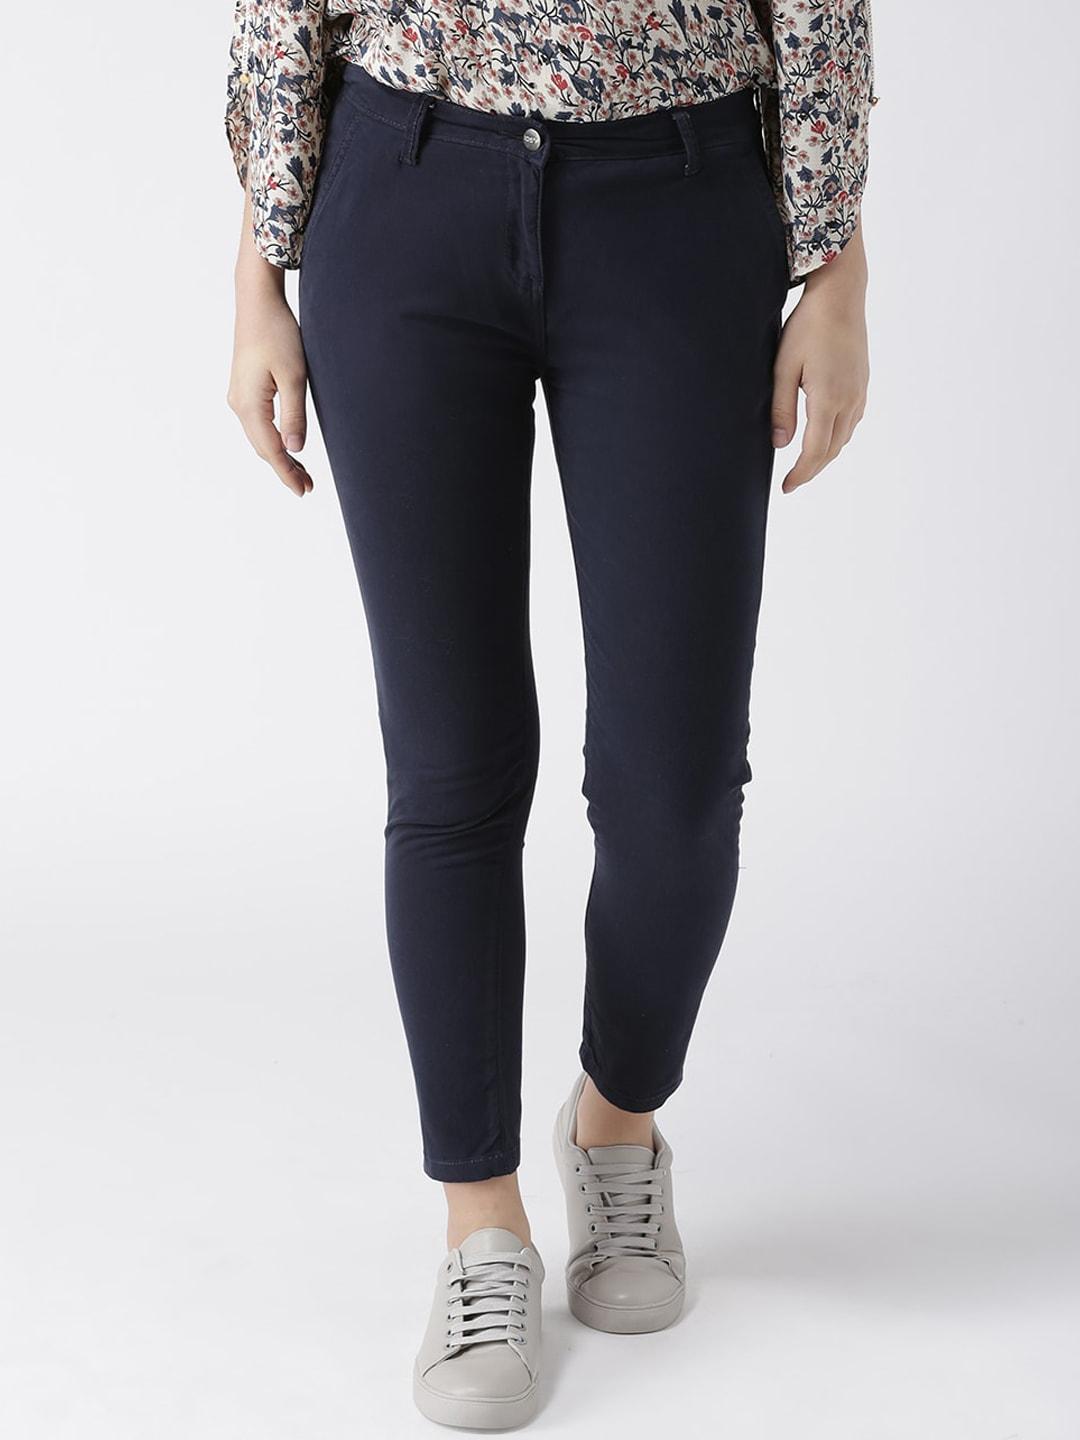 109f women navy blue slim fit jeans